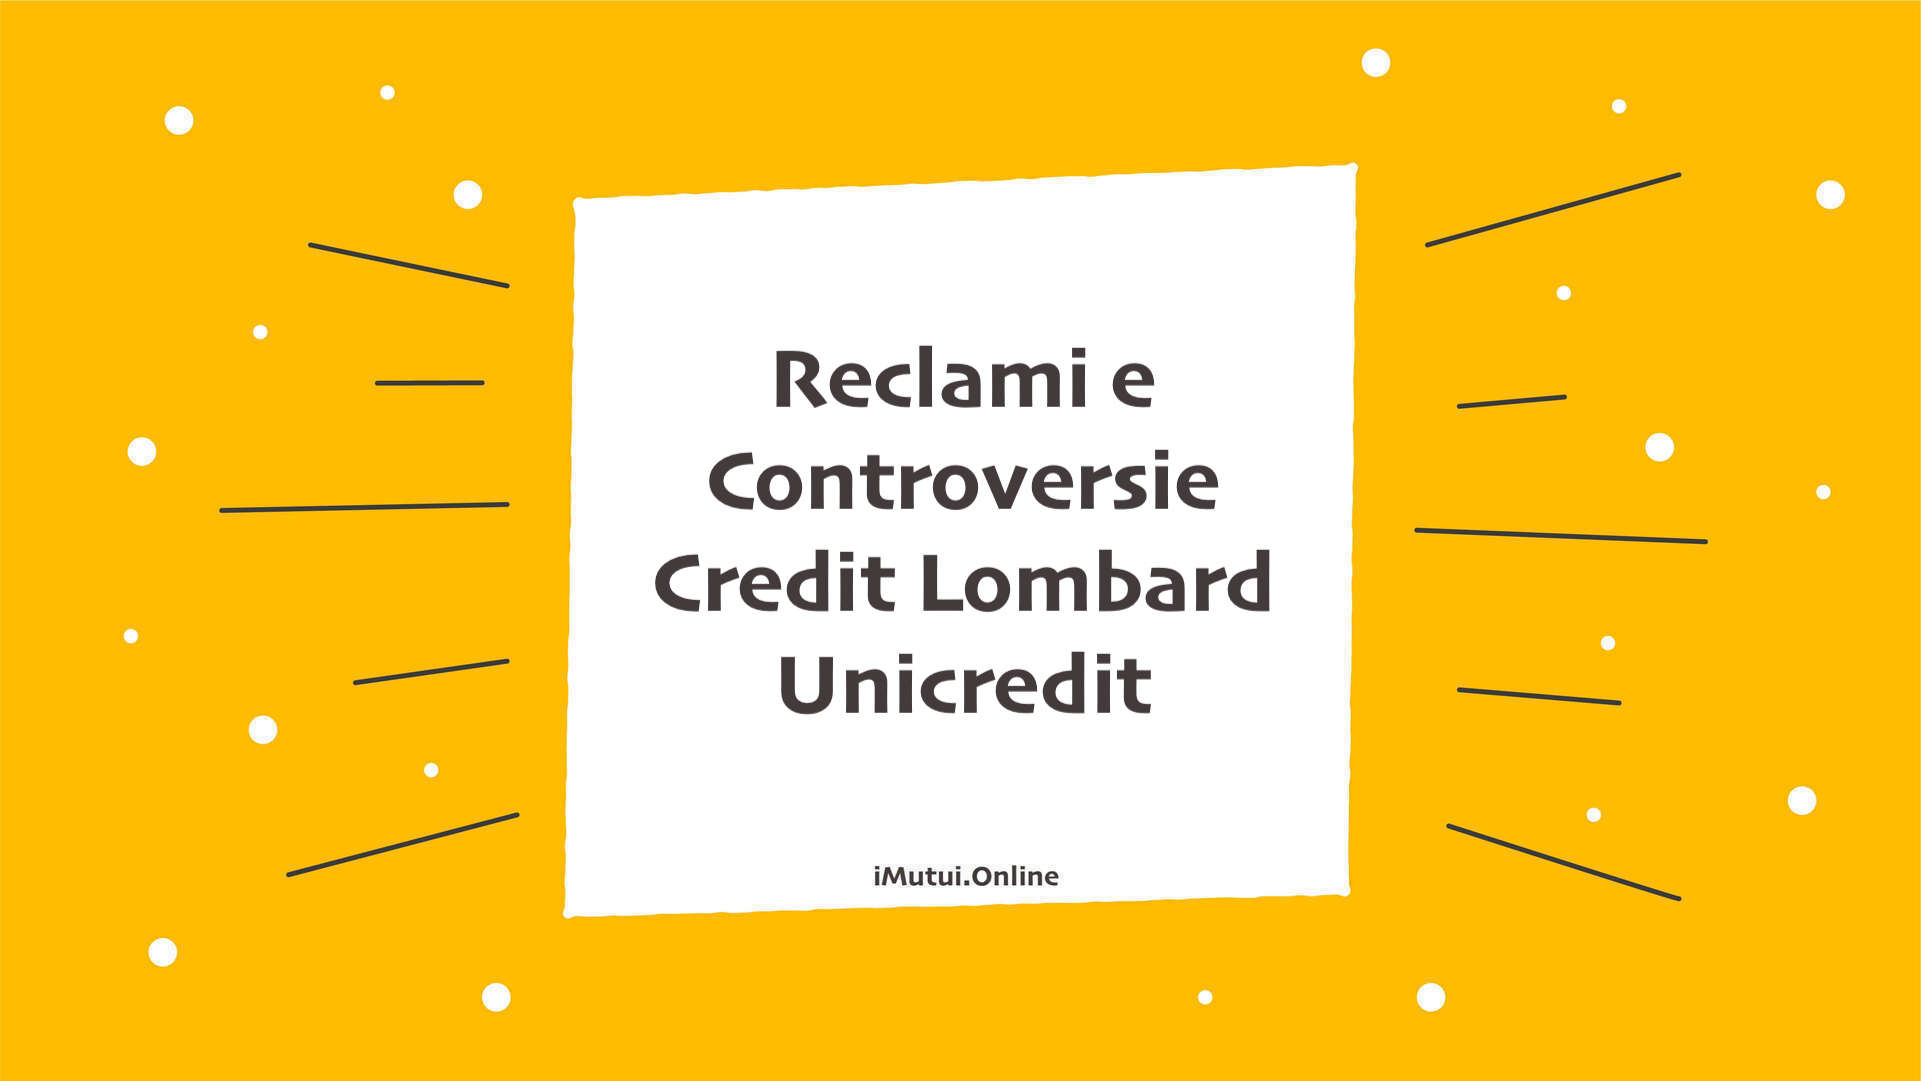 Reclami e Controversie Credit Lombard Unicredit